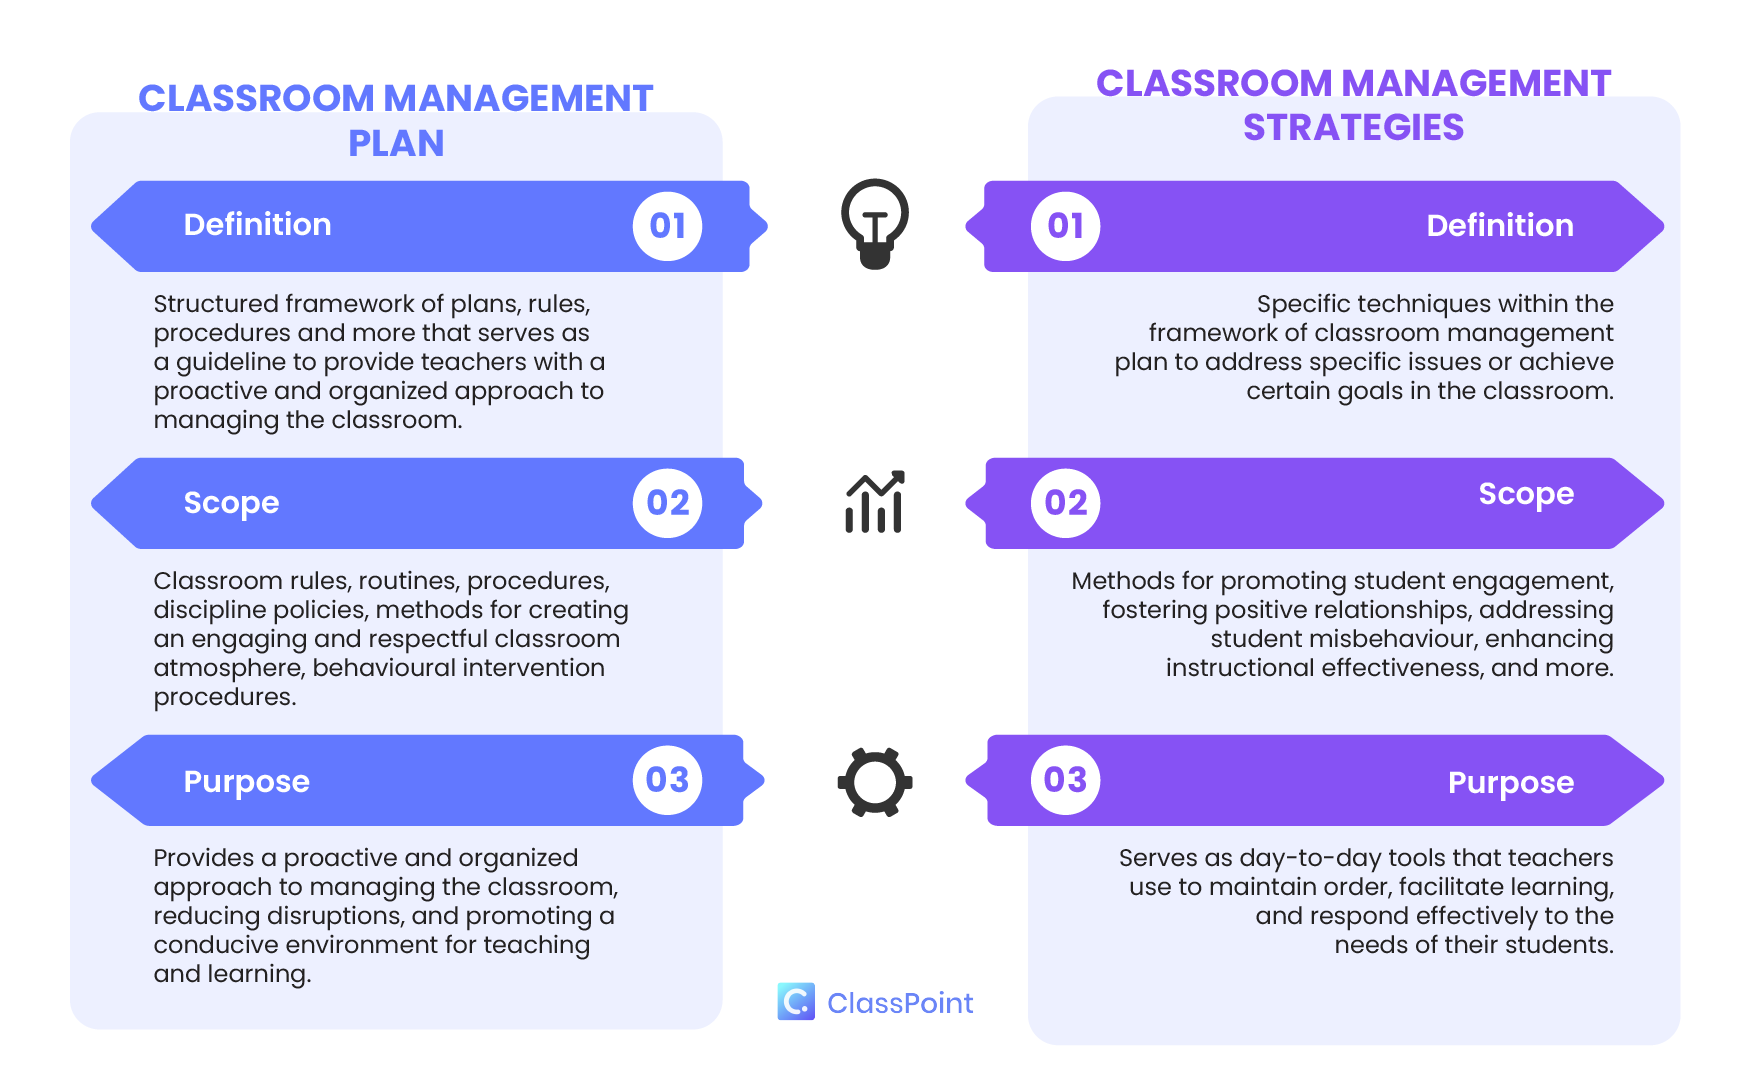 الاختلافات بين خطة إدارة الصف واستراتيجيات إدارة الصف